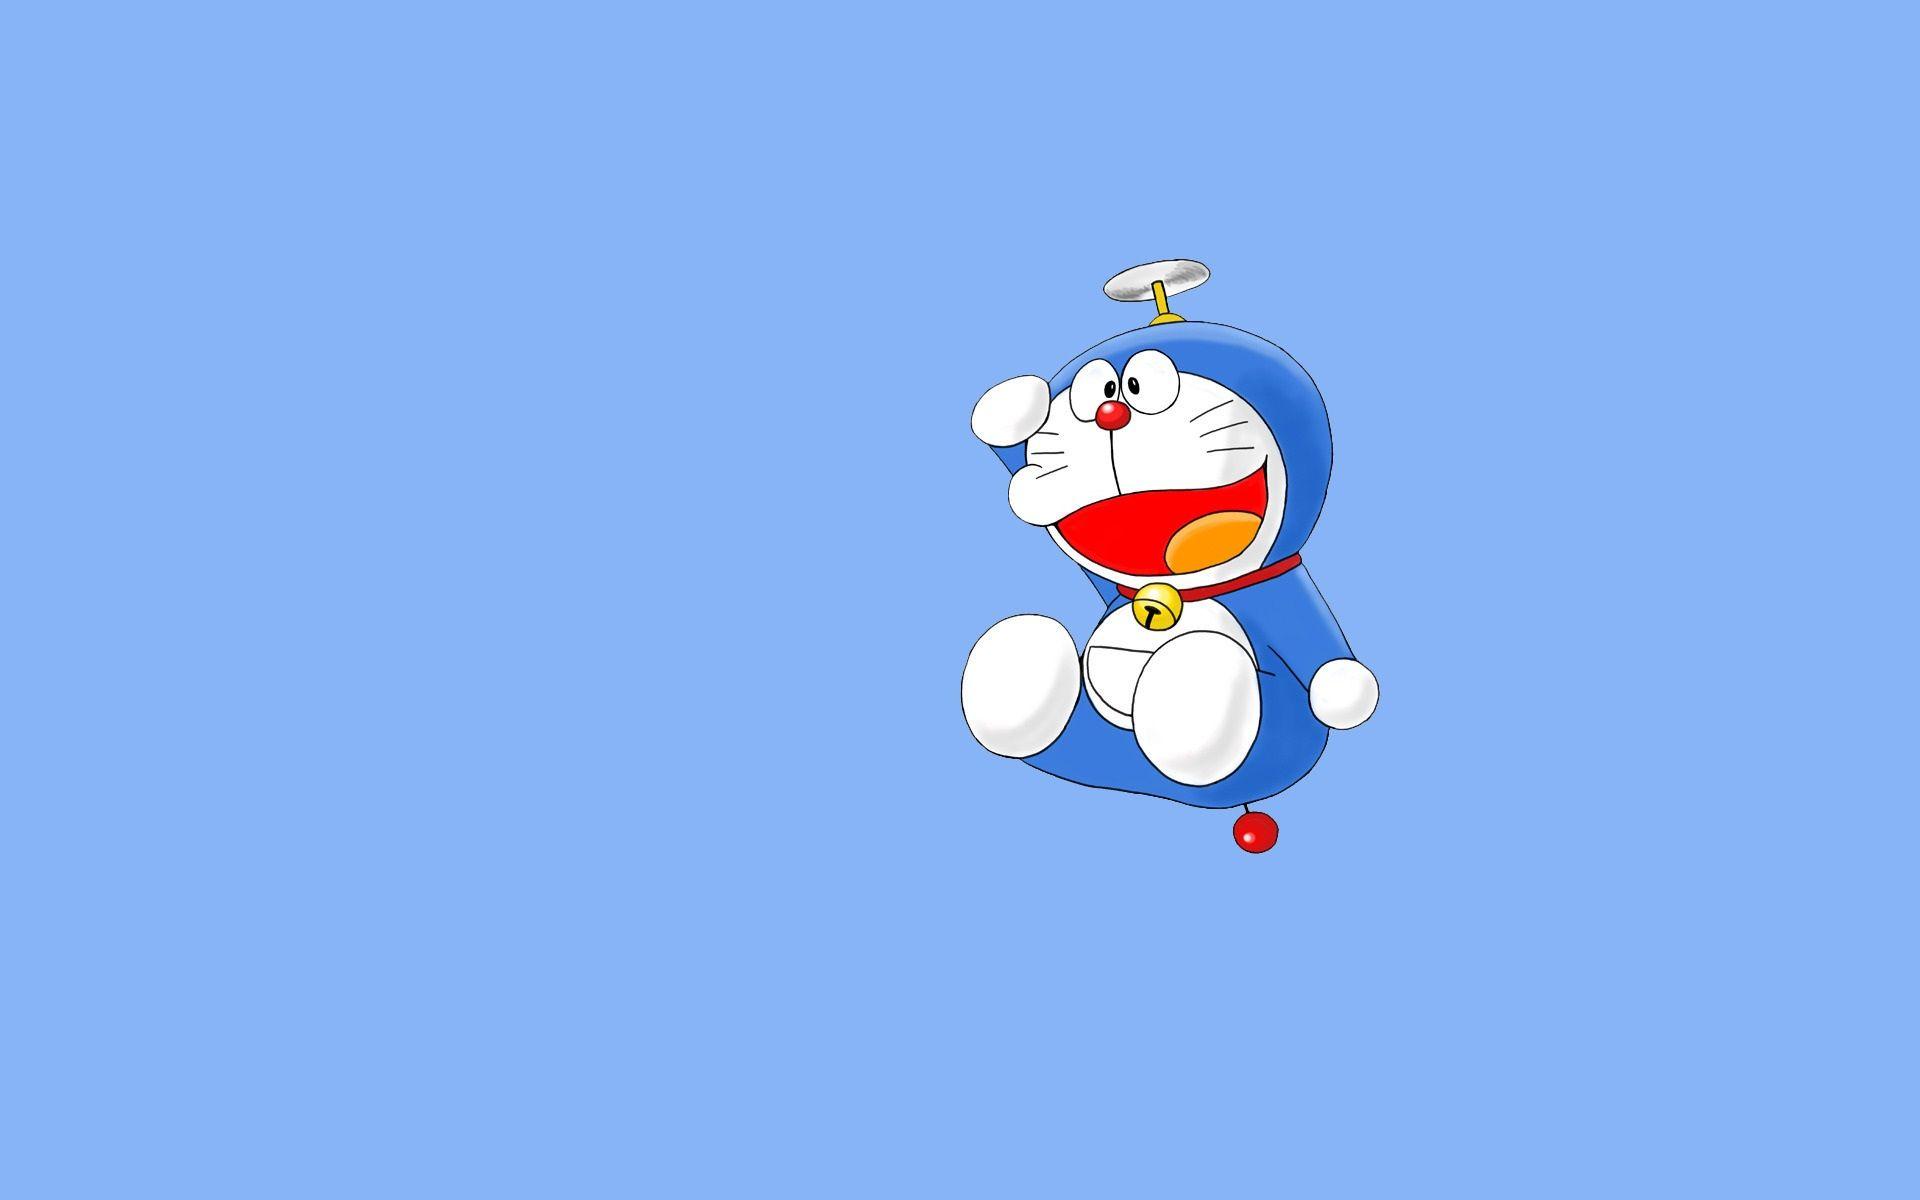 Doraemon PC Wallpapers: Bạn muốn một khung cảnh mới cho máy tính của mình? Hãy tải xuống hàng loạt đầy màu sắc của Doraemon PC Wallpapers - chú mèo robot đáng yêu sẽ mang lại cảm giác vui vẻ và ngọt ngào cho ngày của bạn. Hãy thưởng thức các bức ảnh thông minh này và tự rước một chú mèo Doraemon vào máy tính của bạn.